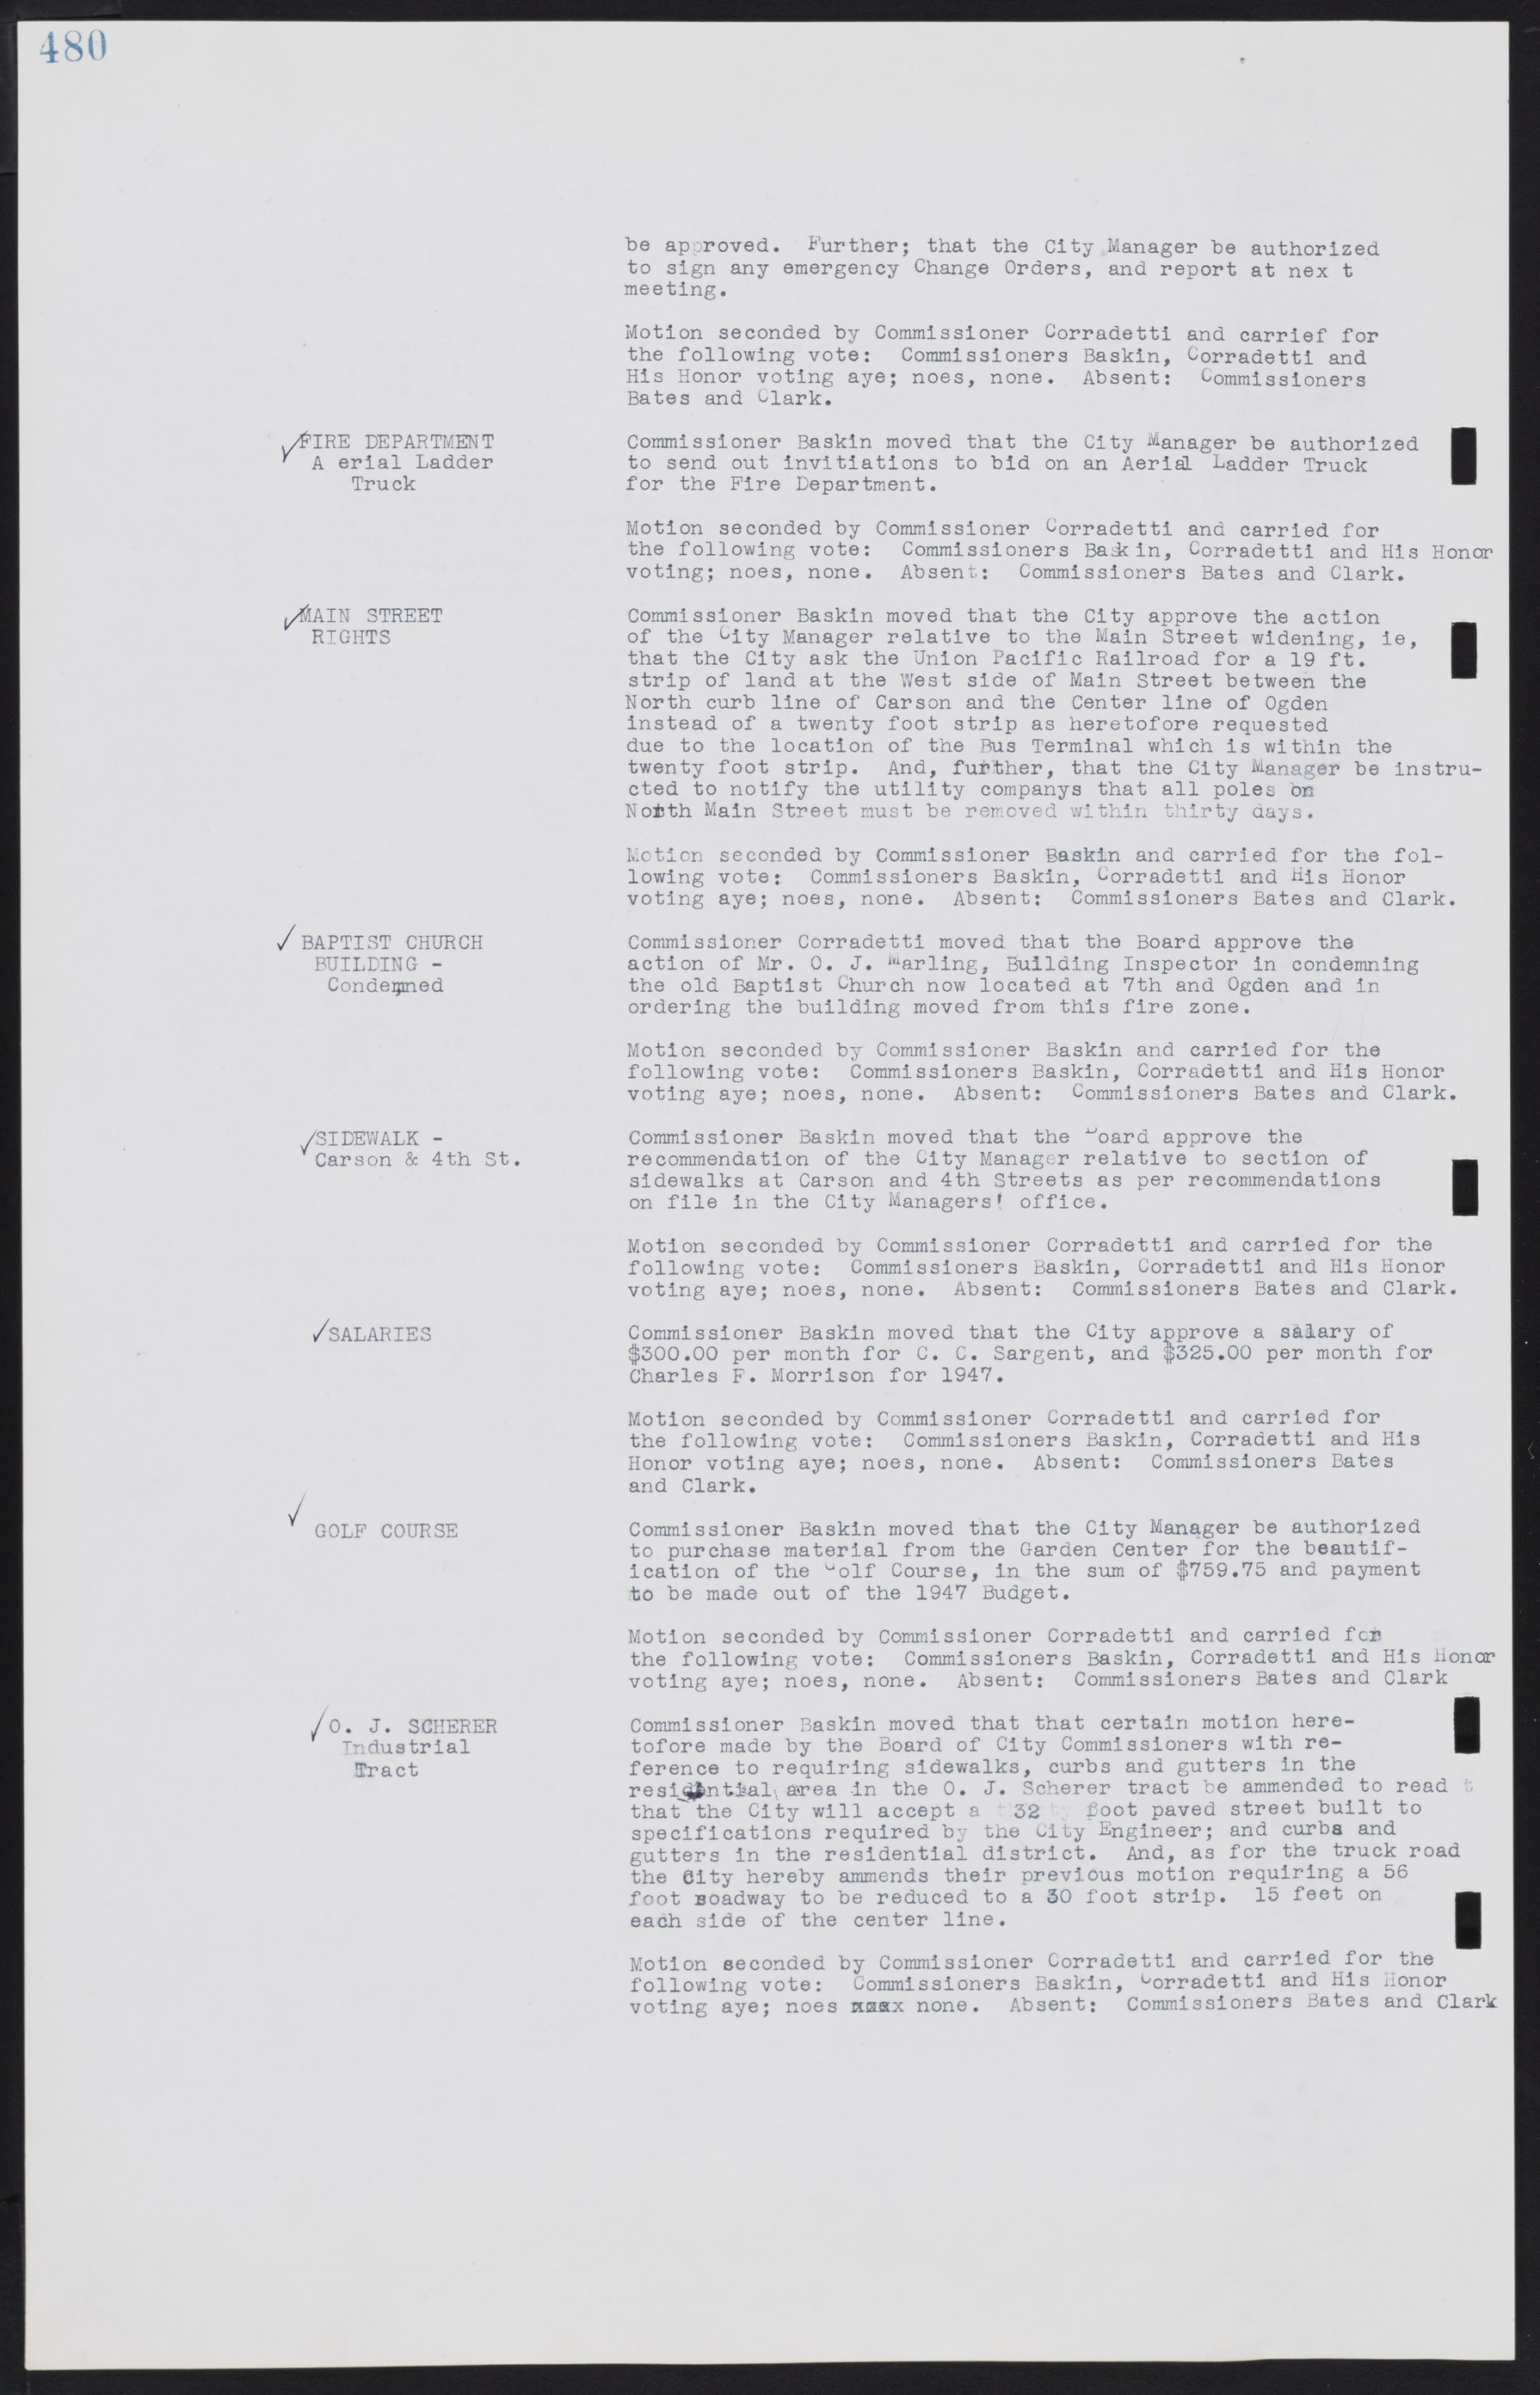 Las Vegas City Commission Minutes, August 11, 1942 to December 30, 1946, lvc000005-511